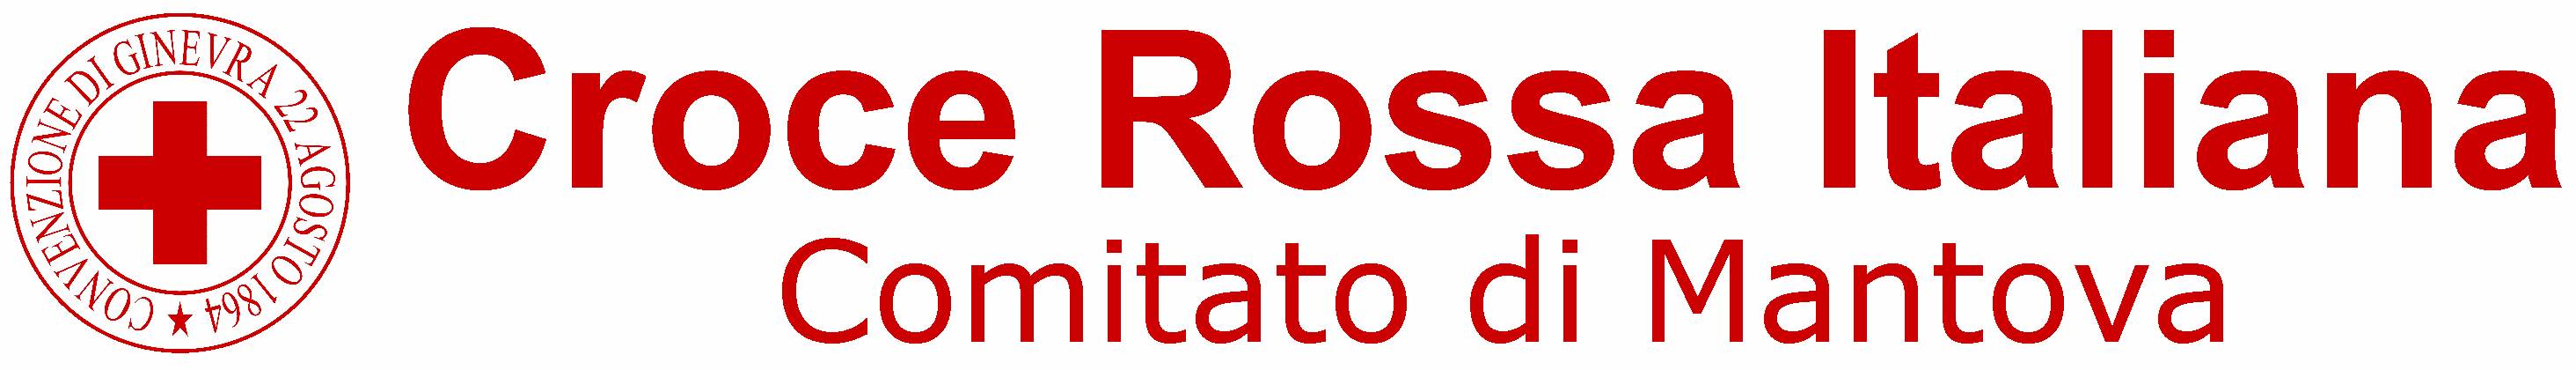 Croce Rossa Italiana - Comitato di Mantova 